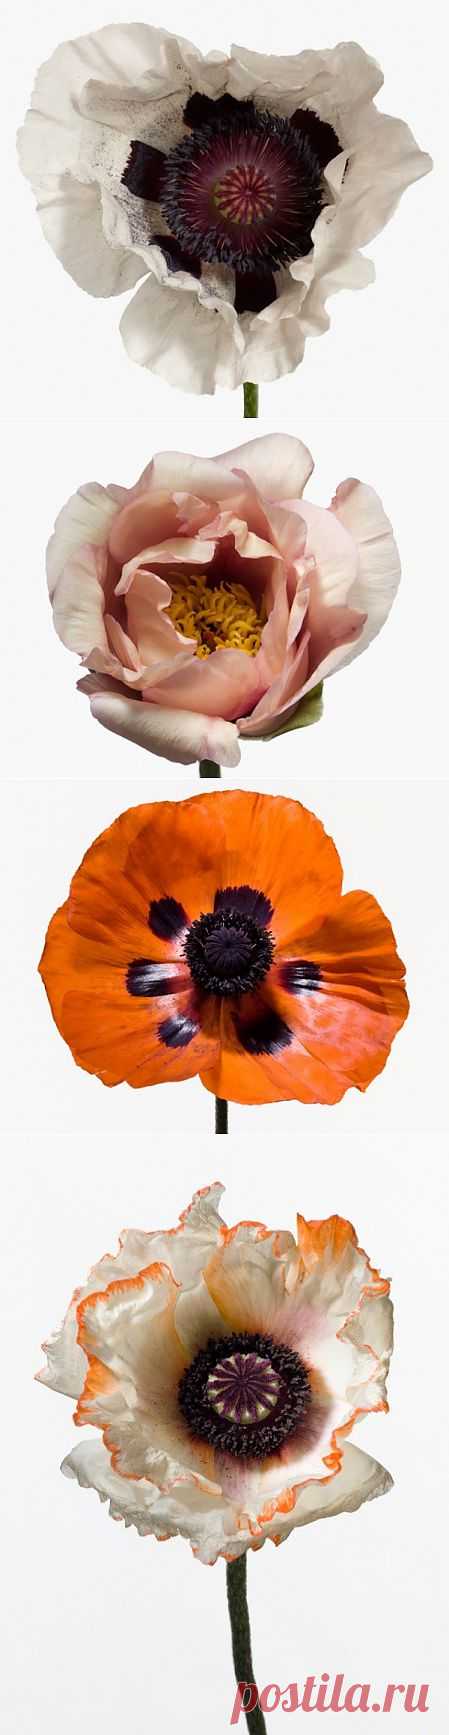 (+1) - Великолепные цветы от Пола Ланге | САД НА ПОДОКОННИКЕ